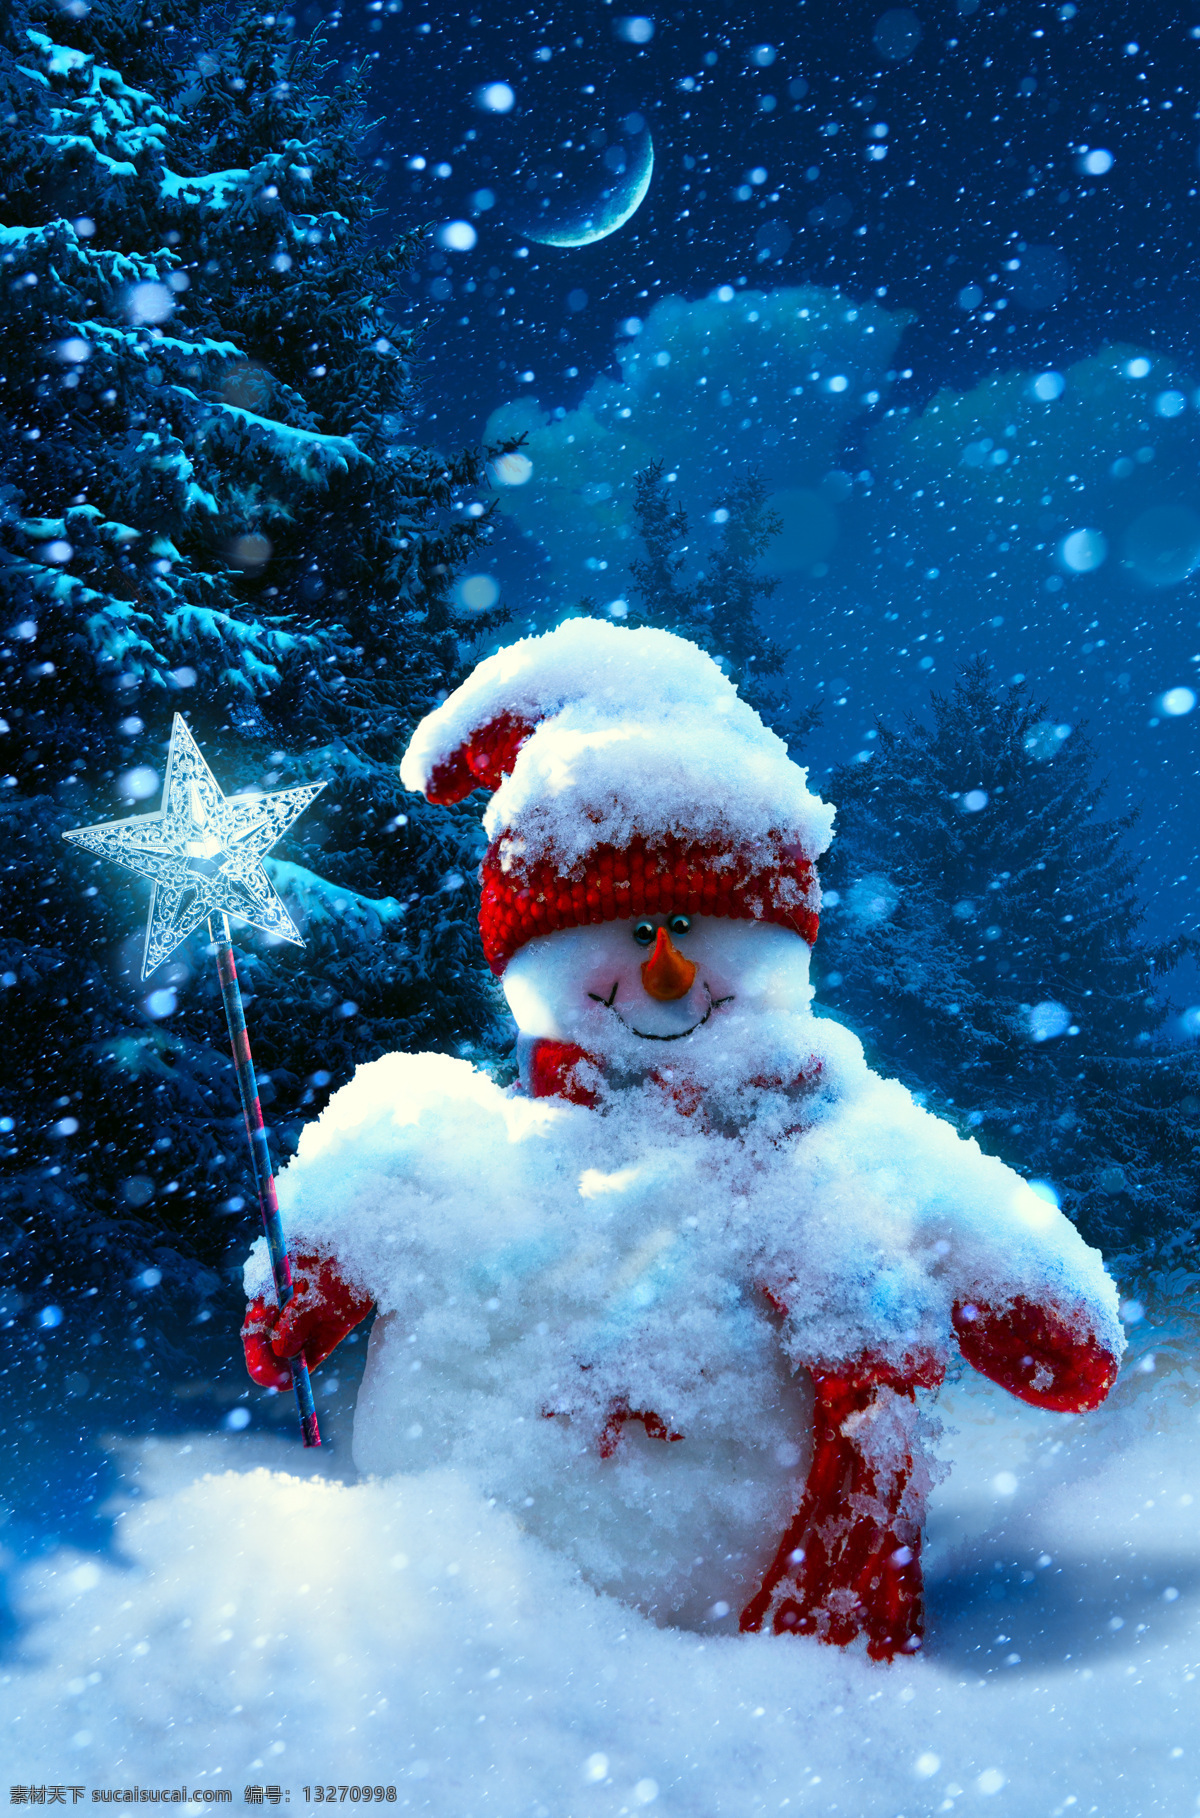 雪地 里 圣诞 雪人 松树 月亮 冬天 圣诞节 圣诞节素材 圣诞节背景 节日背景 圣诞节快乐 装饰 花纹 背景 节日庆典 生活百科